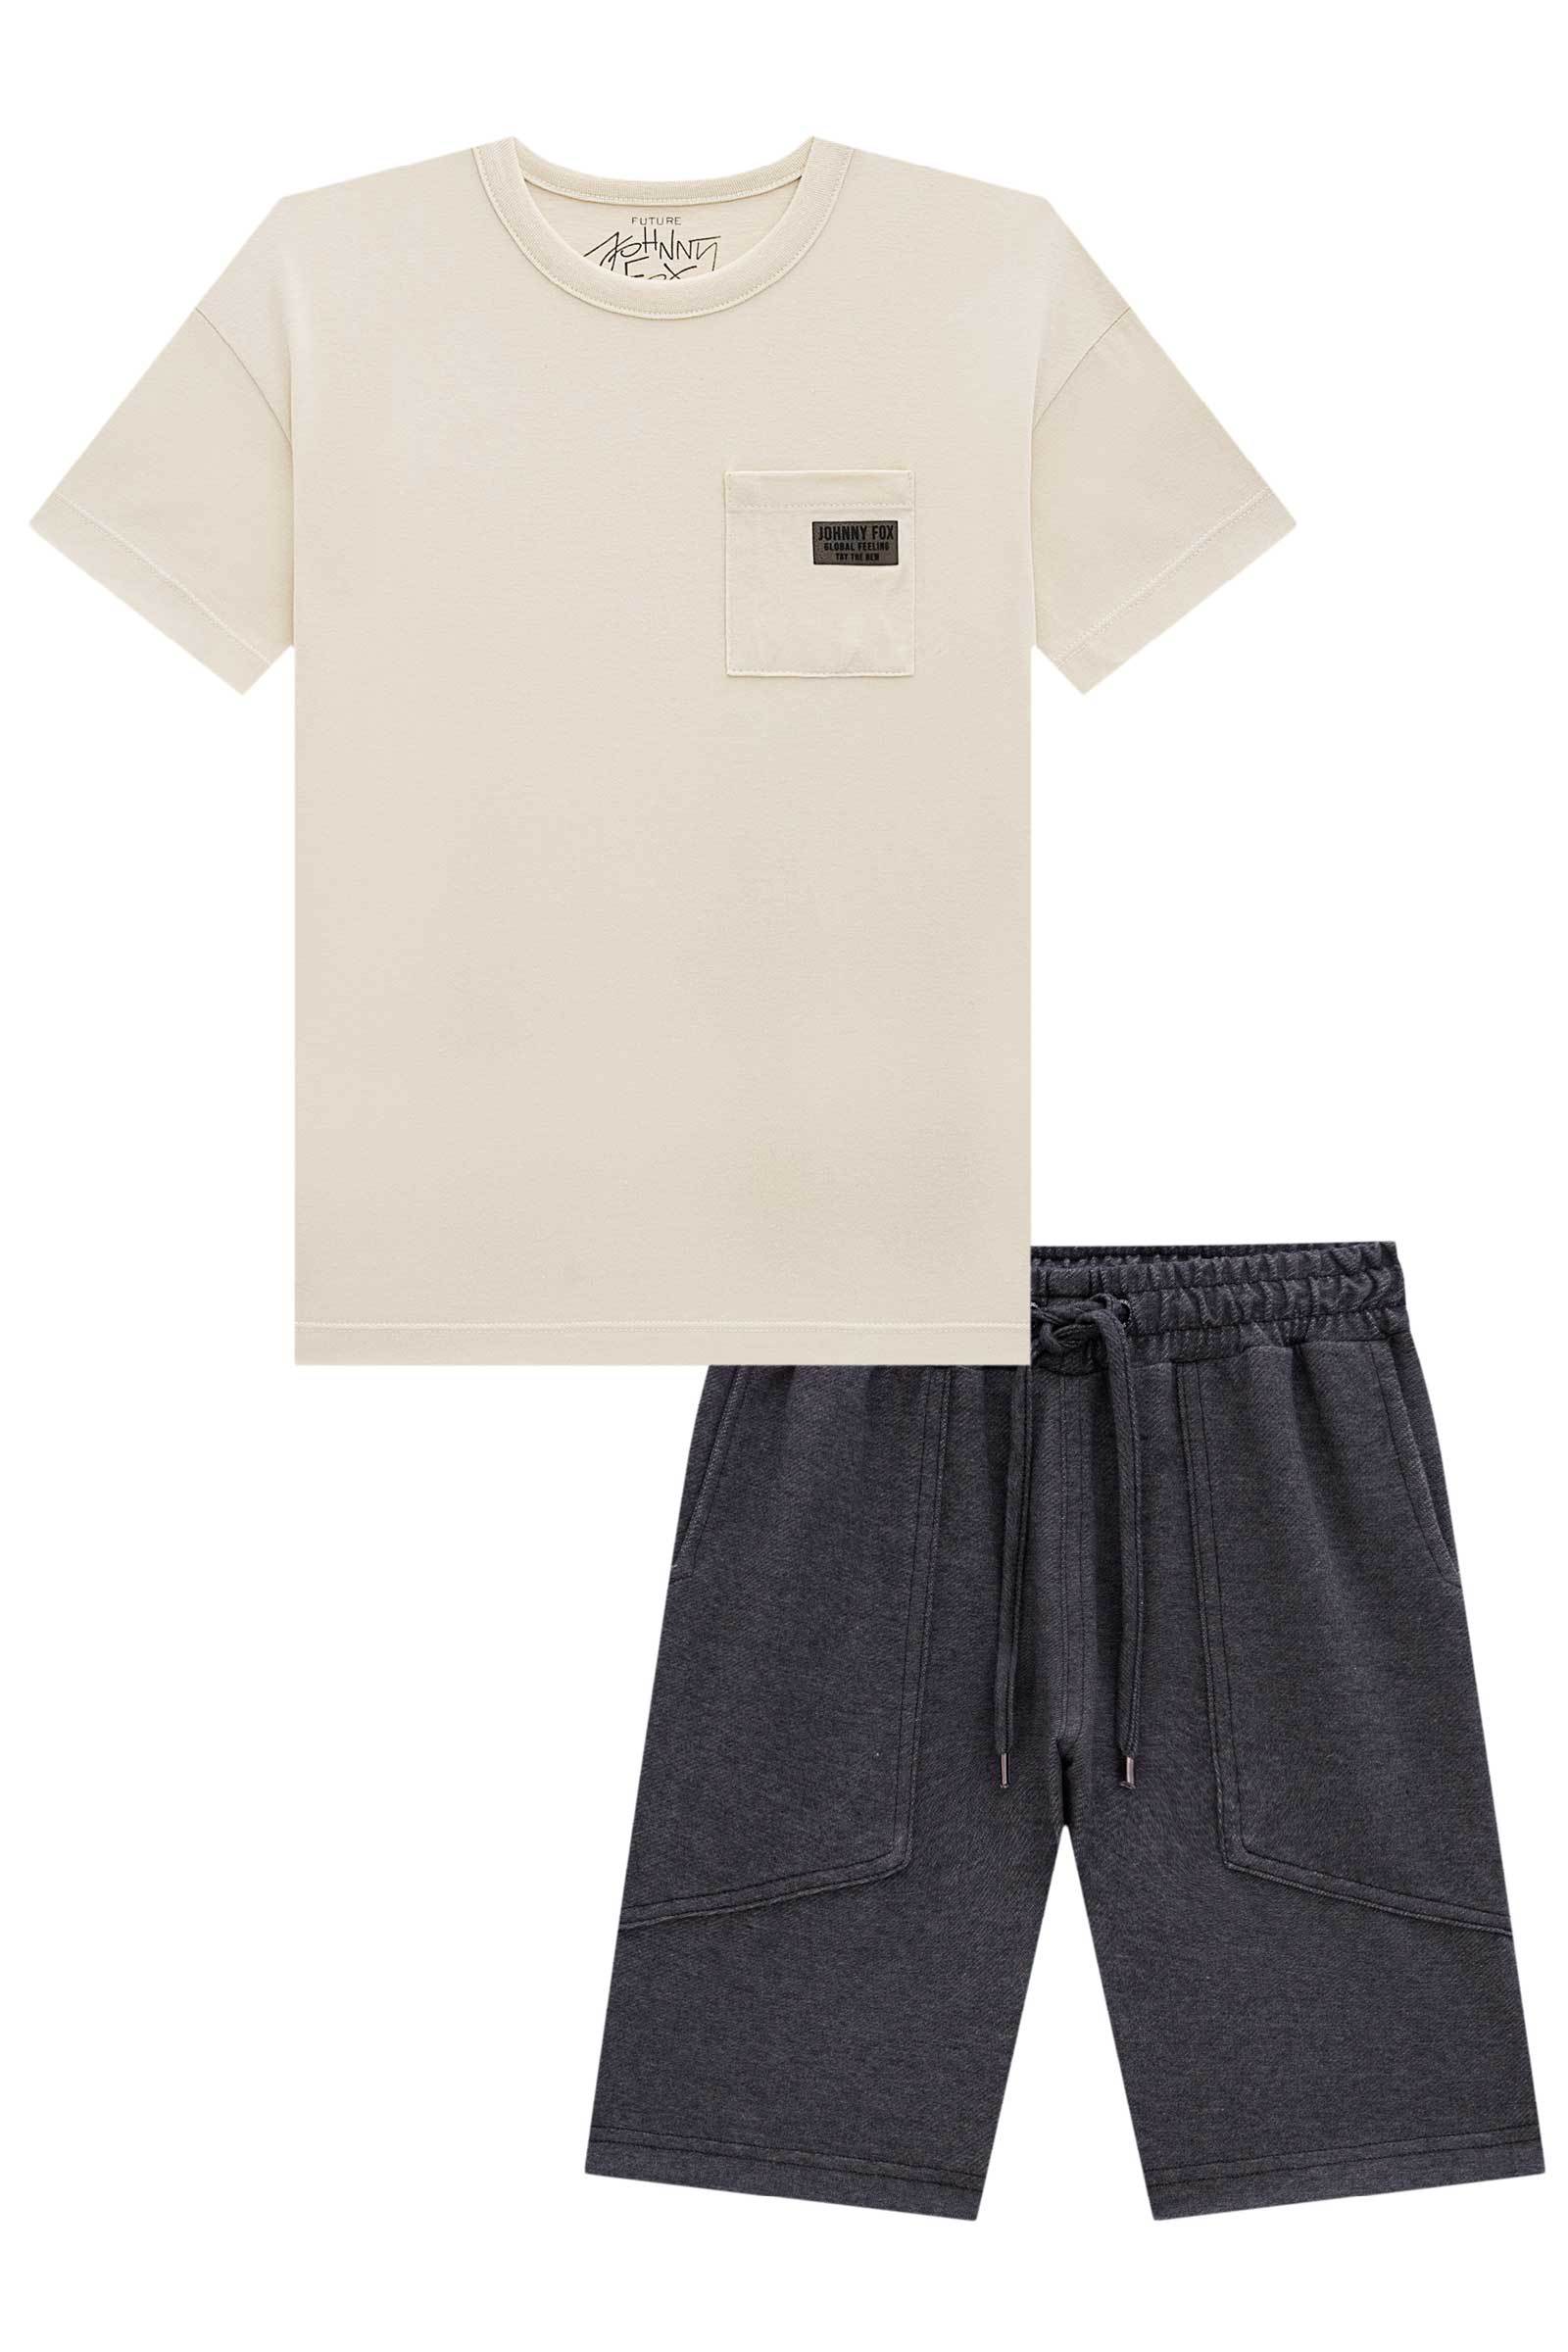 Conjunto de Camiseta em Meia Malha e Bermuda em Cotton Jeans com Elastano 75319 Johnny Fox